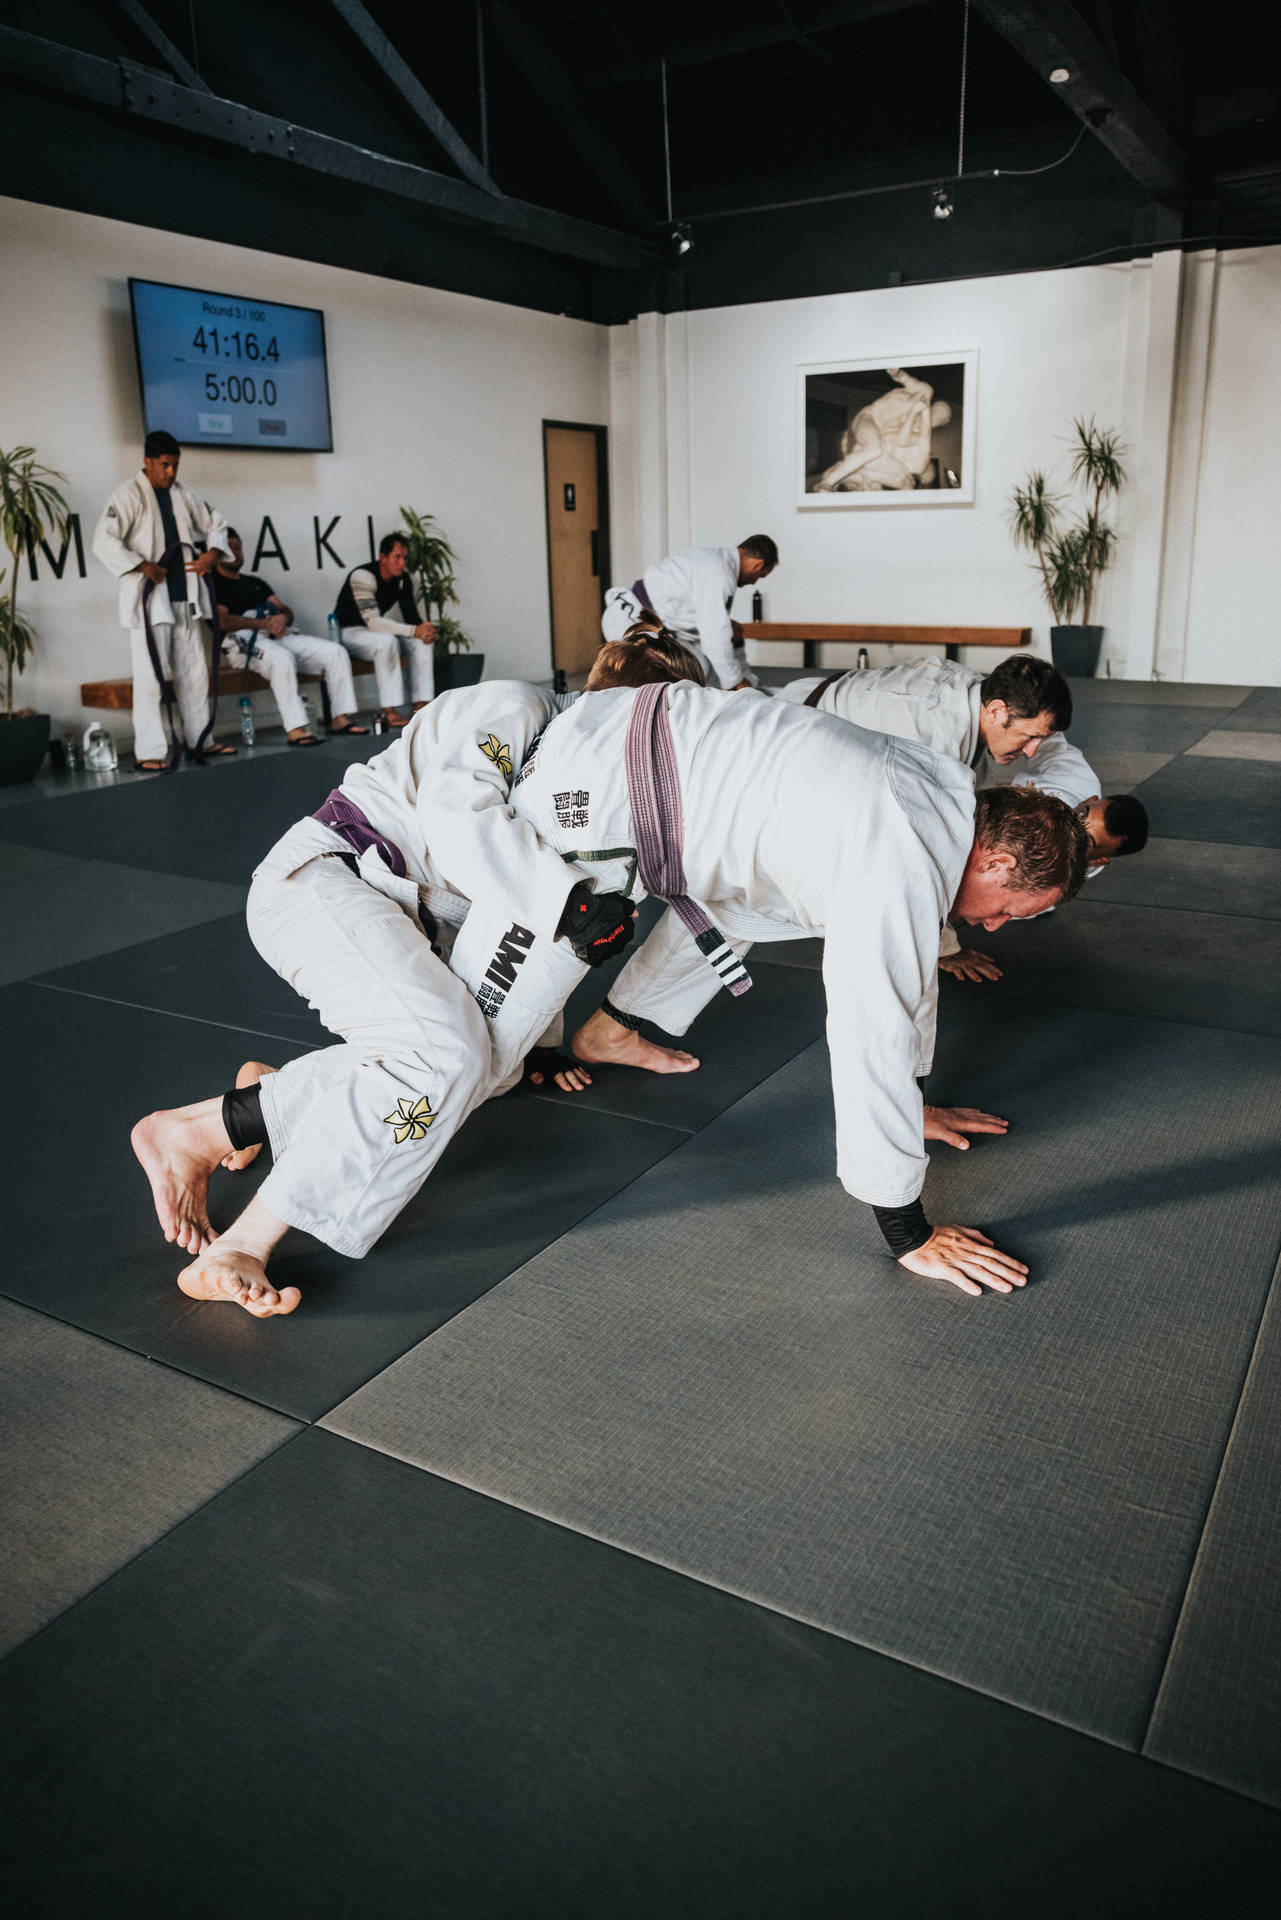 Classic Judo Technique